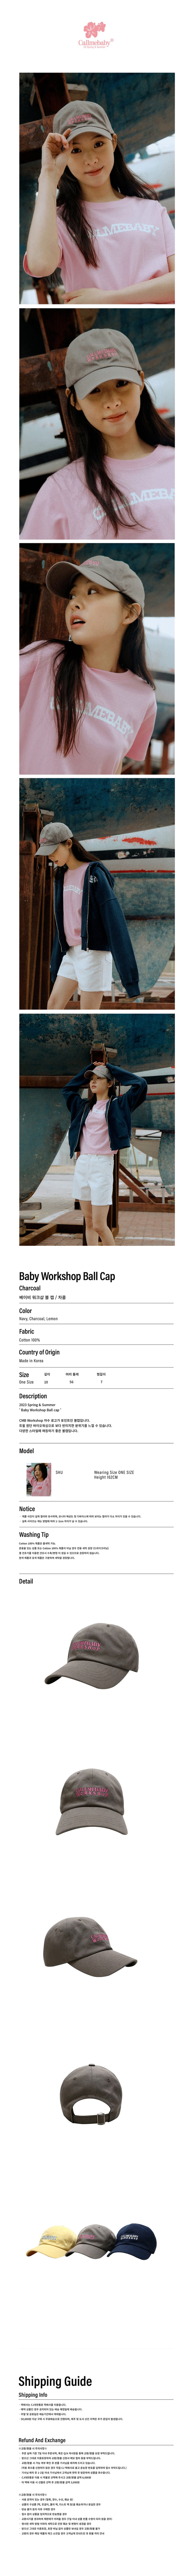 ベイビーワークショップボールキャップ / Baby Workshop Ball Cap _ Charcoal